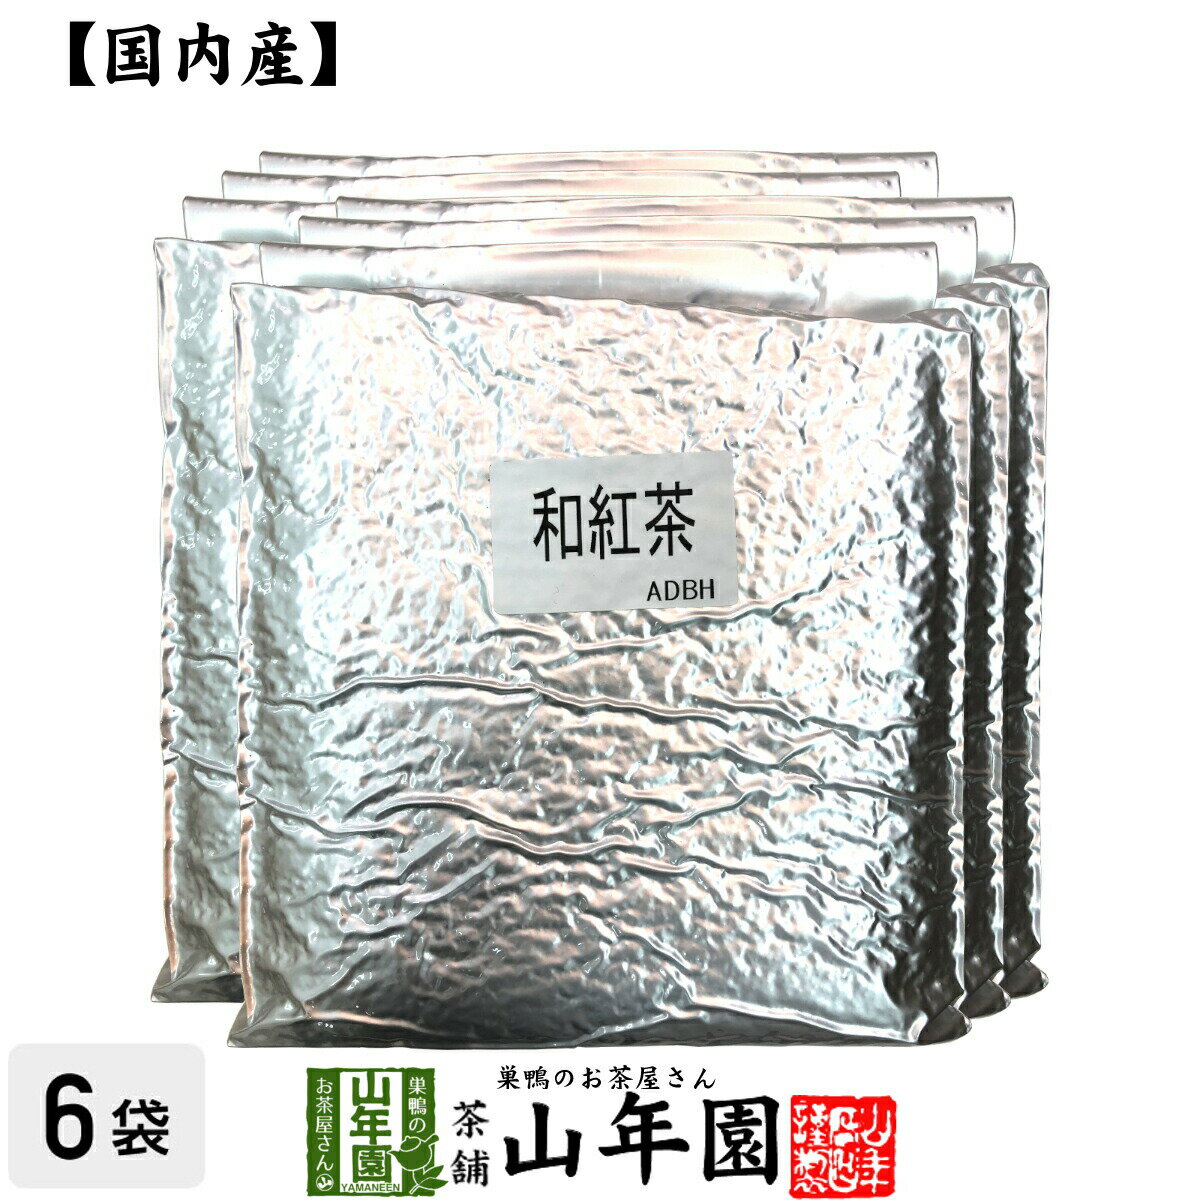 【国産 100%】業務用和紅茶 1kg×6袋セッ...の商品画像